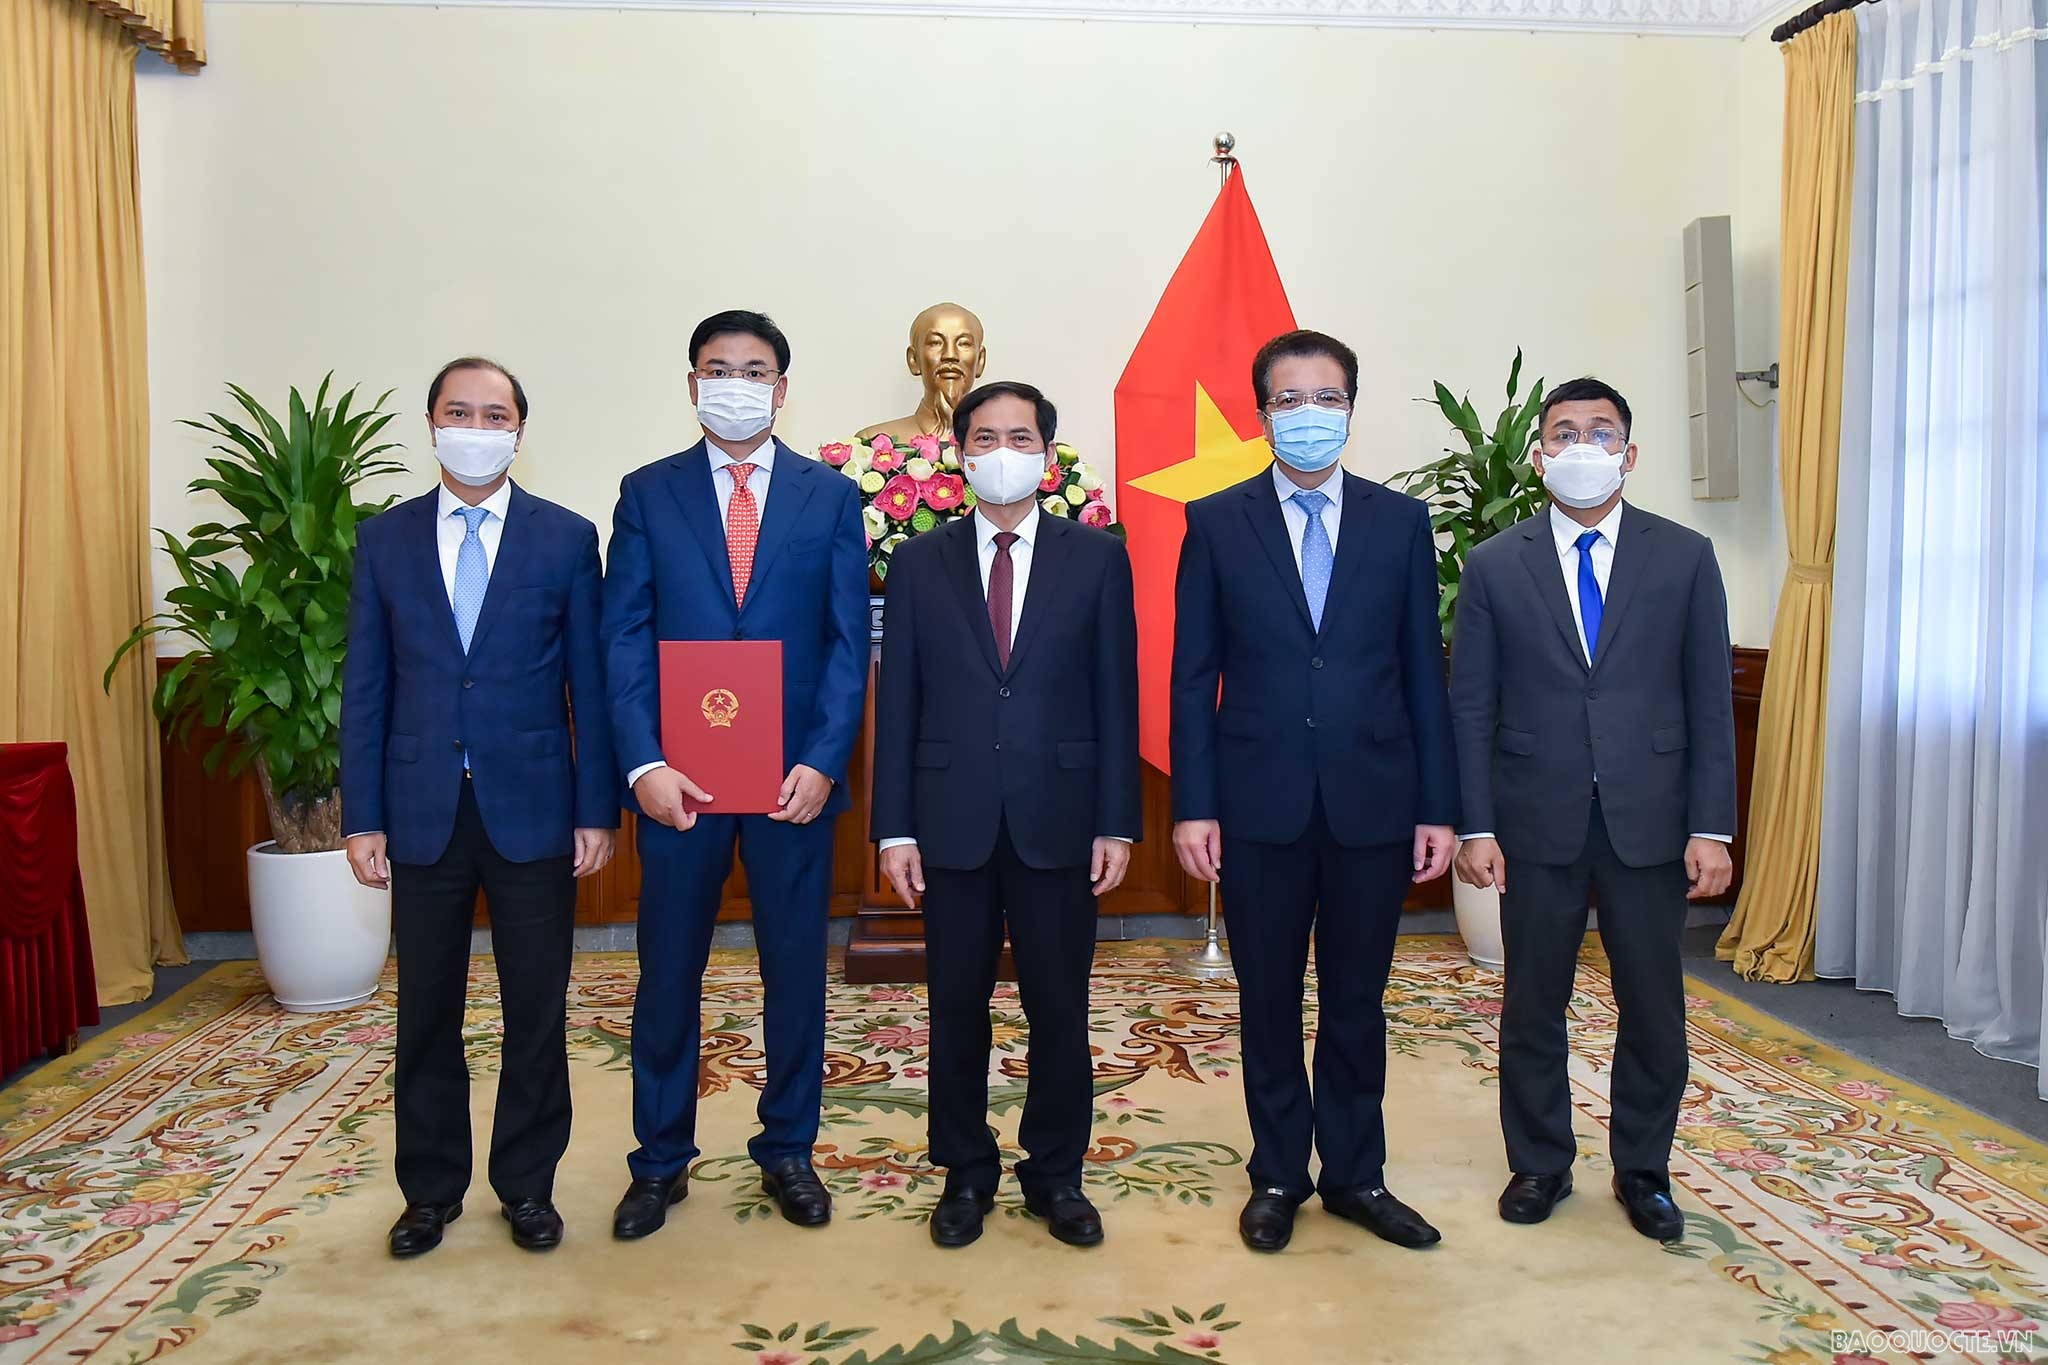 Bộ trưởng Ngoại giao Bùi Thanh Sơn trao quyết định bổ nhiệm cho Thứ trưởng Phạm Quang Hiệu